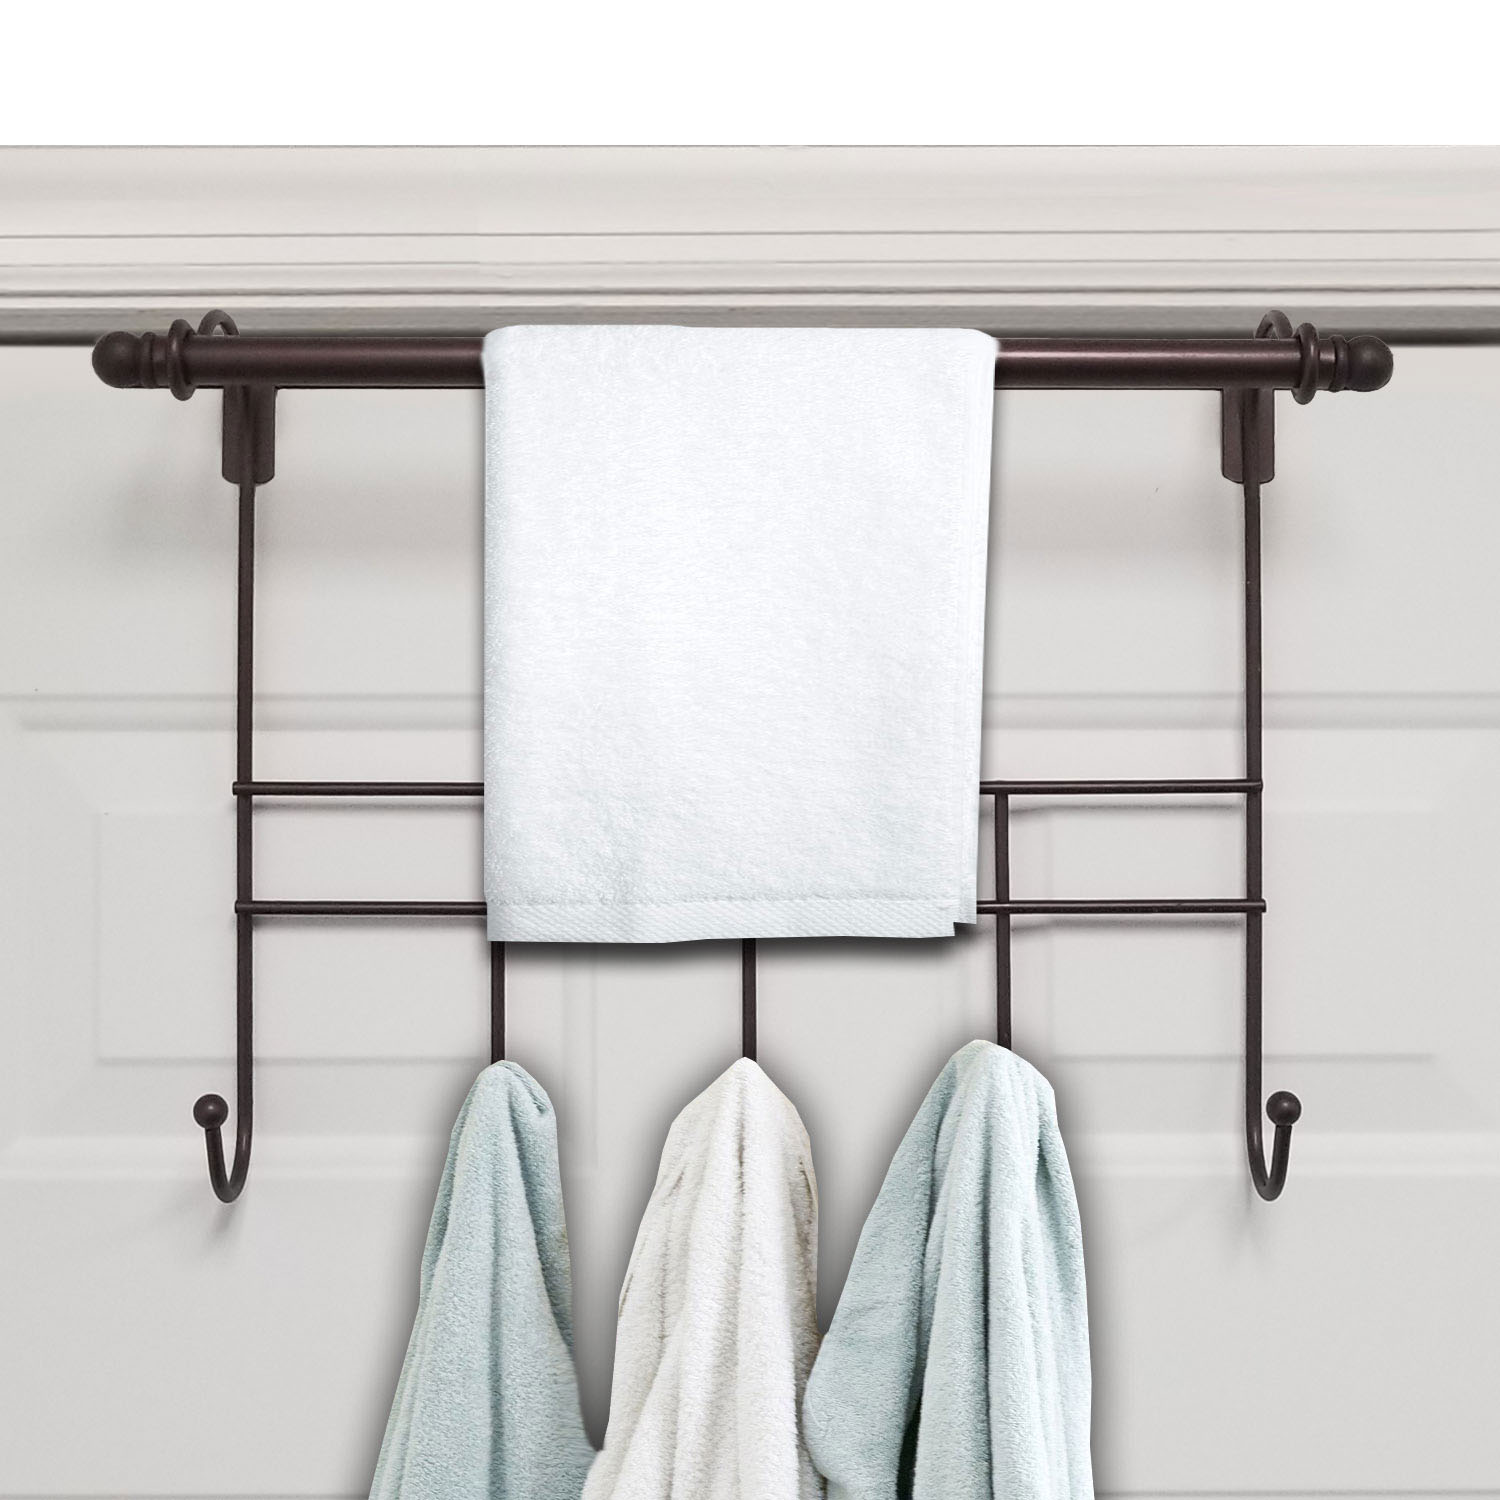 Towel Door Hanger includes Towel Rack Bar, 5 Towel Hooks, No Assembly Required, 17 Inches Wide, 2 Inch Over the Door Hook Space, Bronze